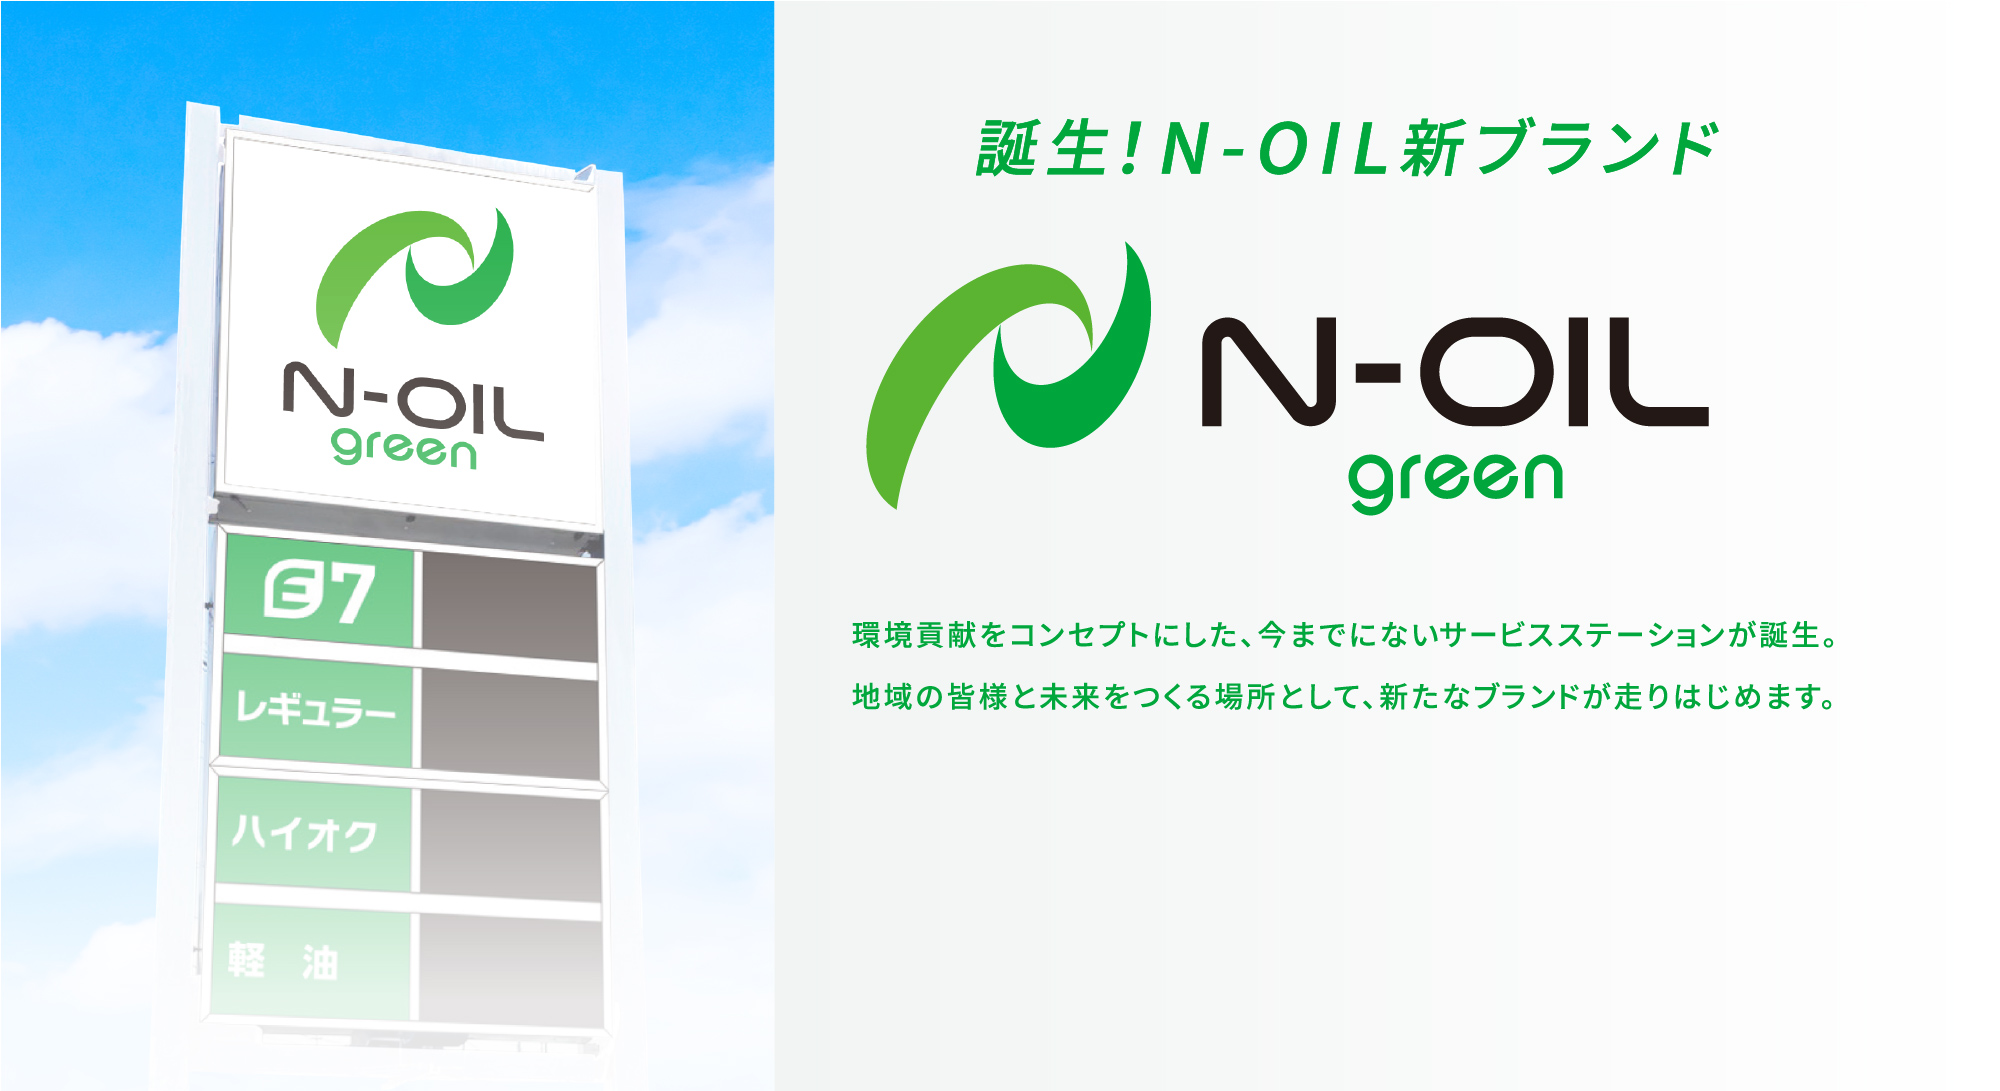 誕生!N-OIL新ブランド N-OIL green 環境貢献をコンセプトにした、今までにないサービスステーションが誕生。地域の皆様と未来をつくる場所として、新たなブランドが走りはじめます。